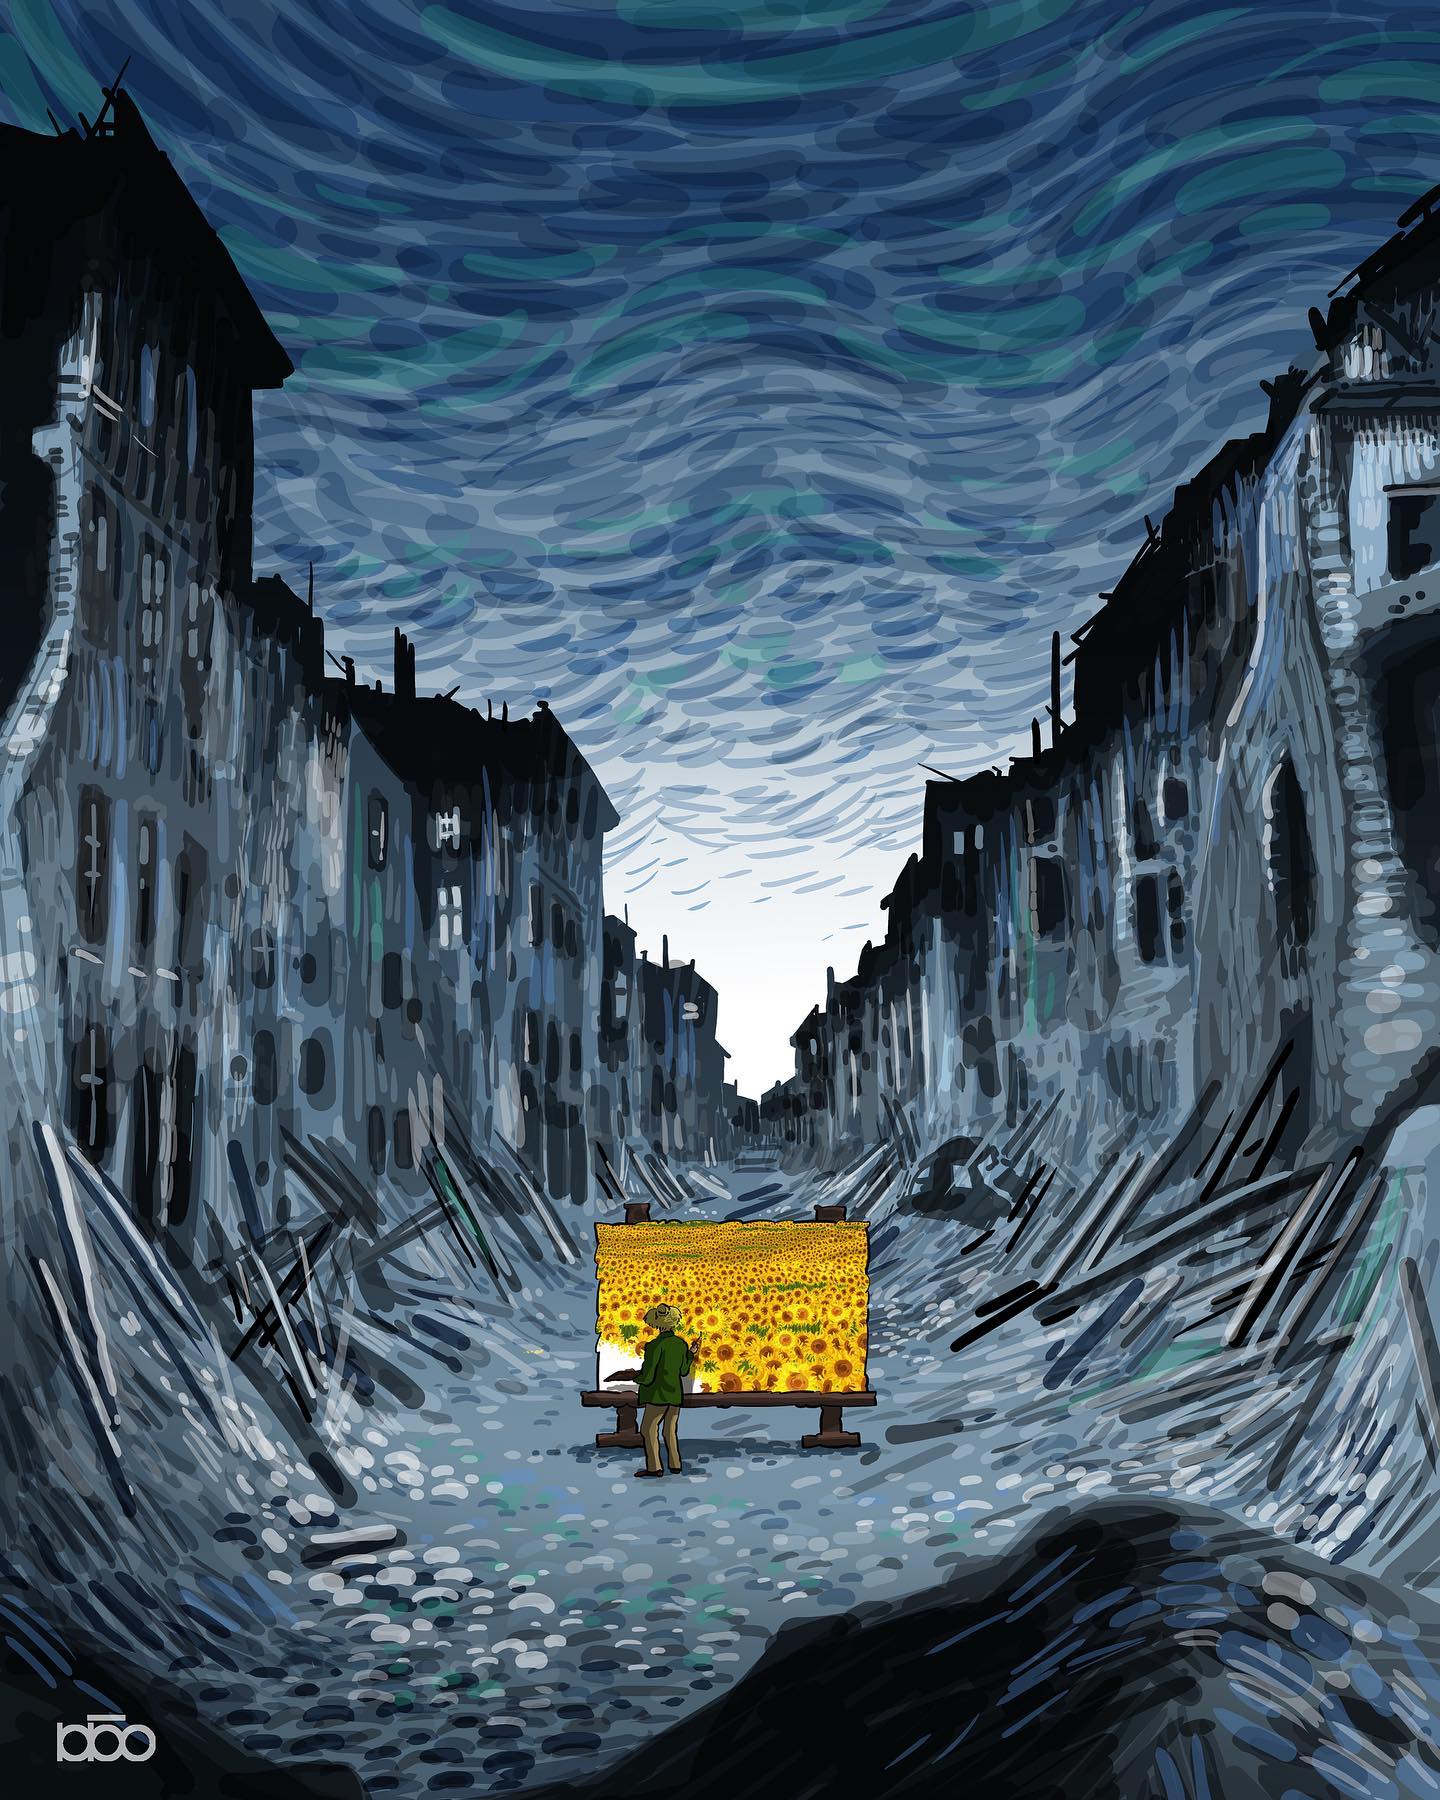 Đời đặc sắc của Van Gogh, thử tưởng tượng họa sĩ đại tài sống trong một thế giới hoạt hình? - Ảnh 13.